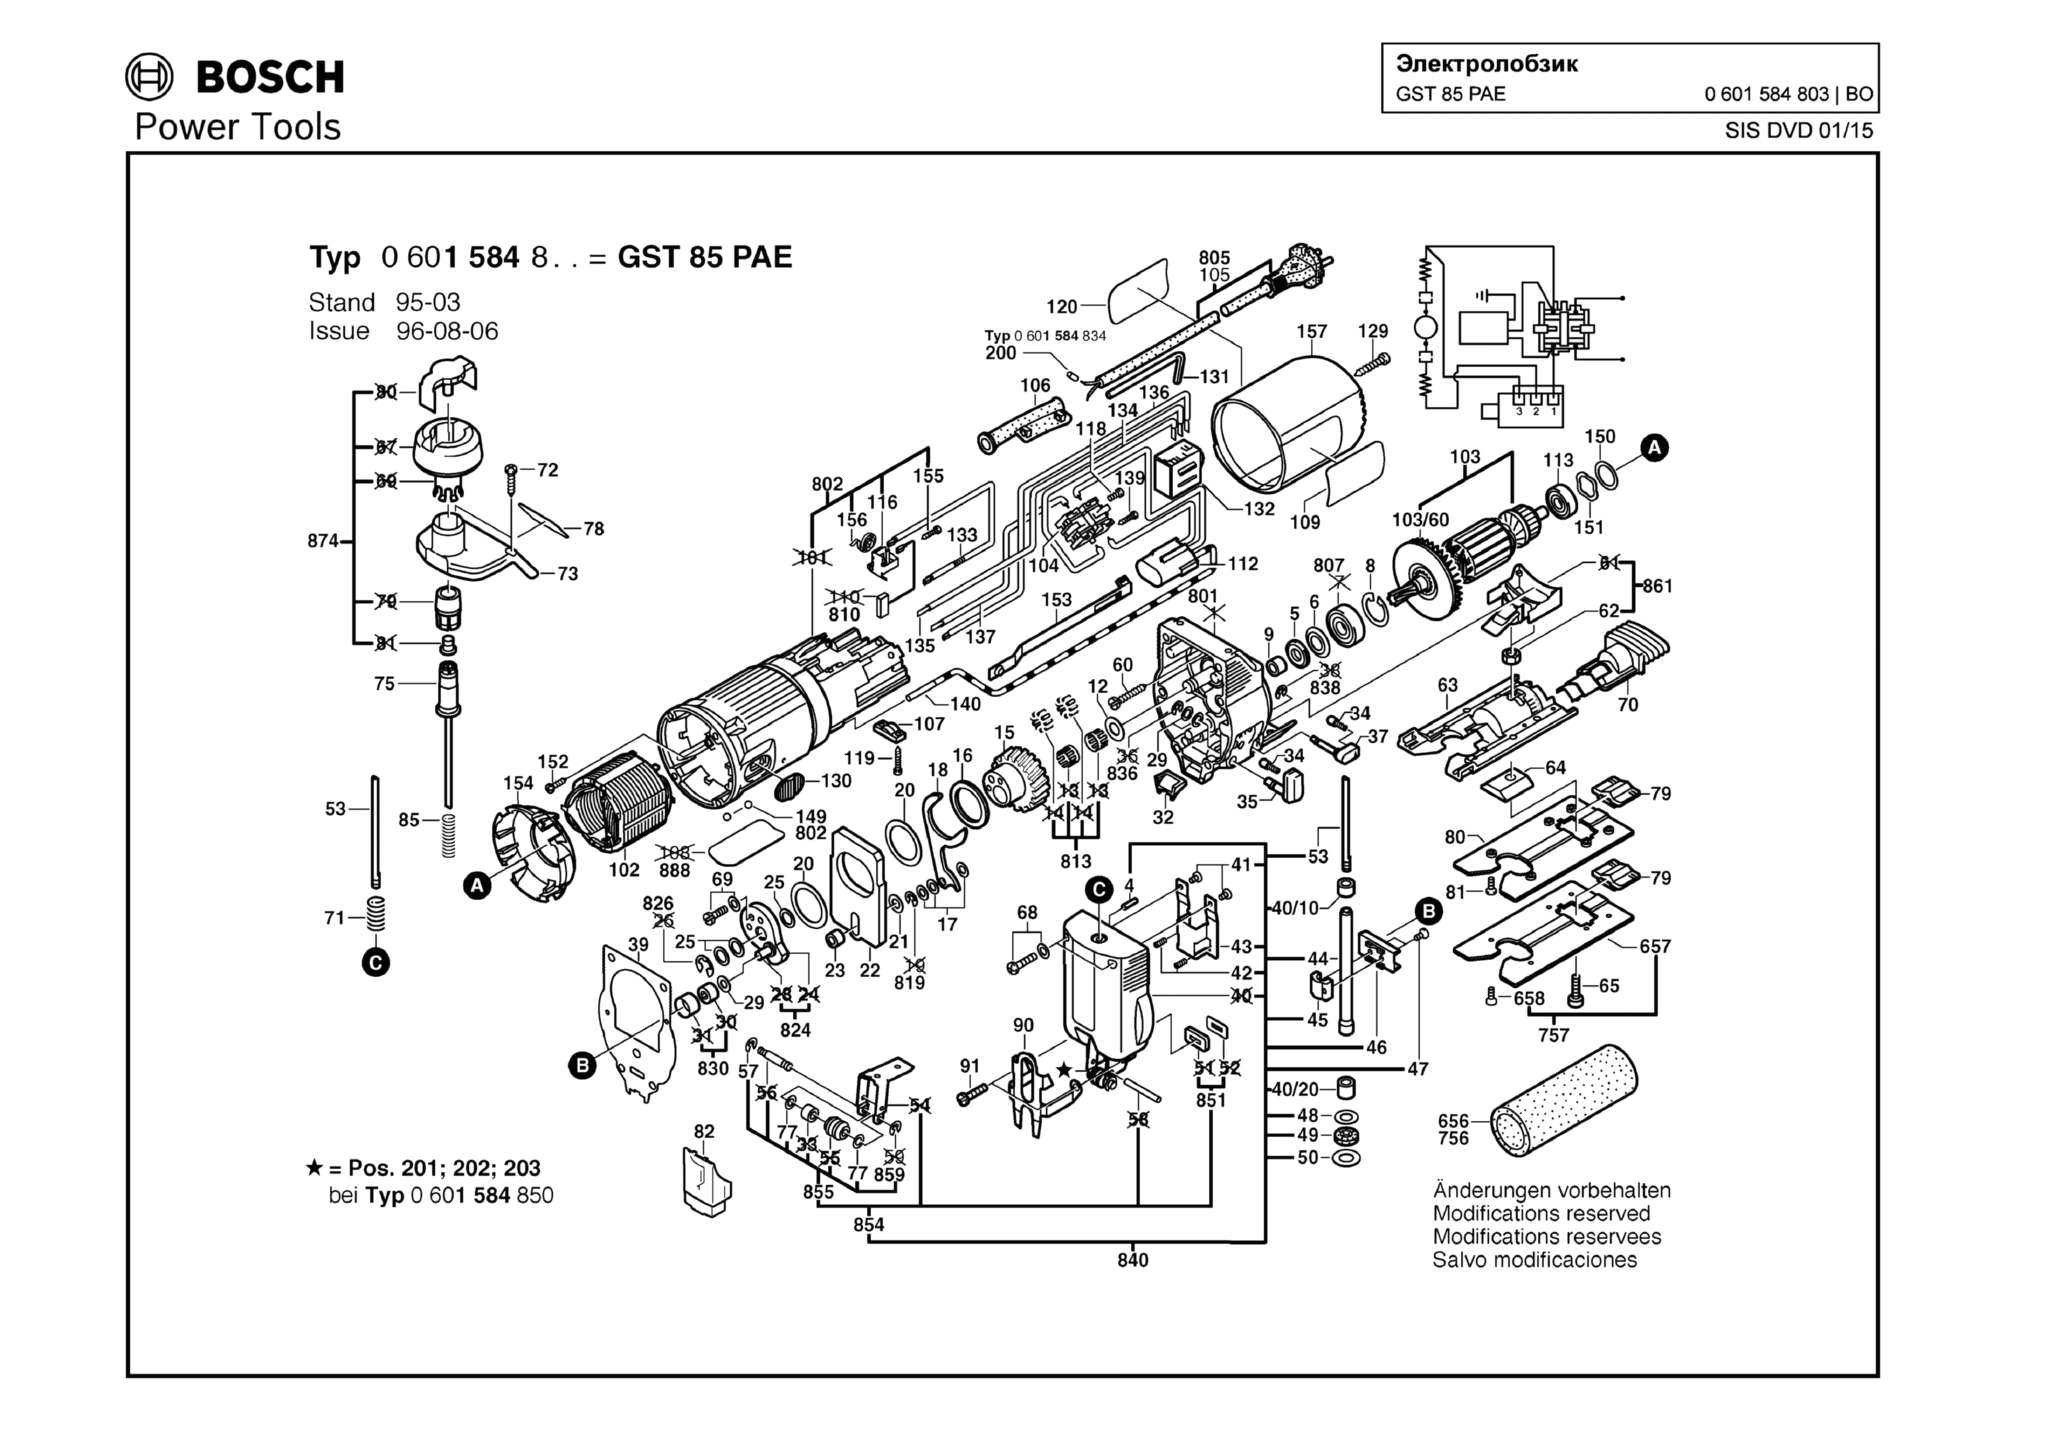 Запчасти, схема и деталировка Bosch GST 85 PAE (ТИП 0601584803)